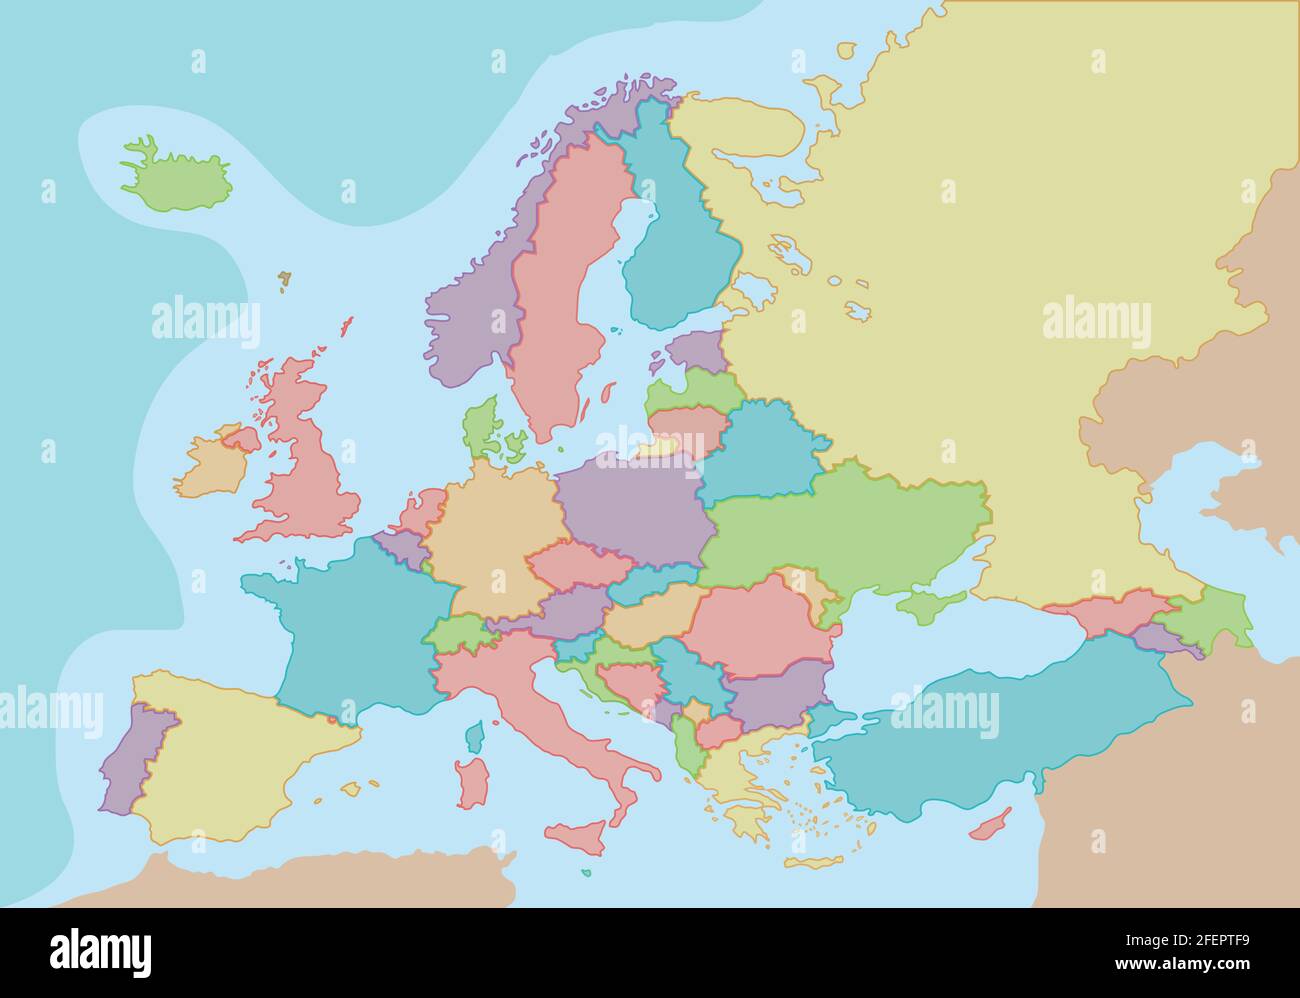 Carte politique de l'Europe avec couleurs et frontières pour chaque pays. Illustration vectorielle. Illustration de Vecteur